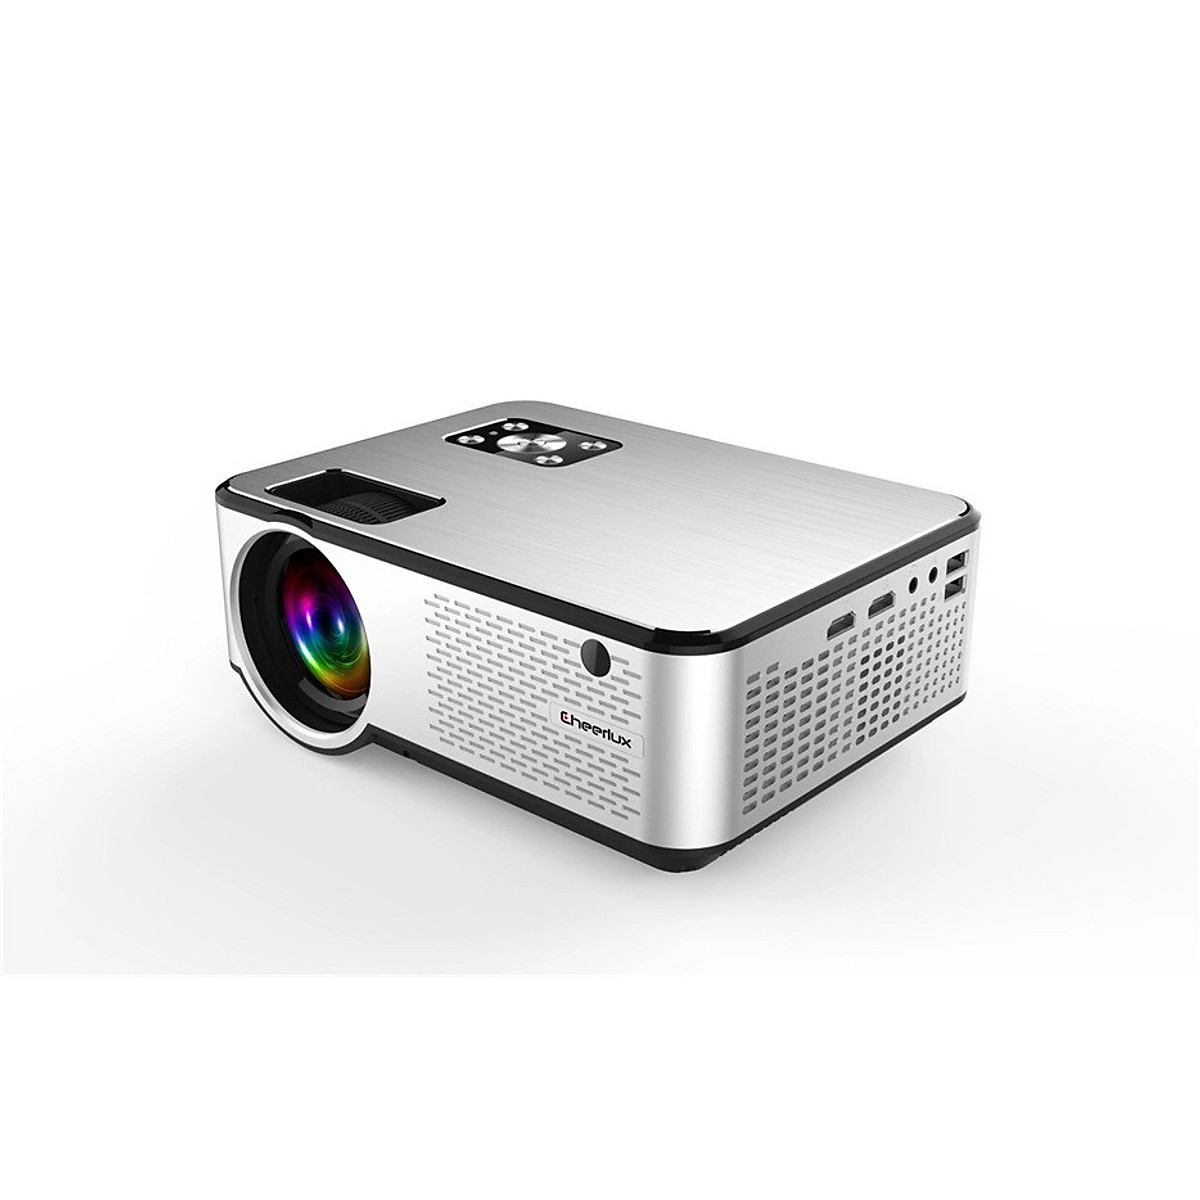 Máy chiếu mini projector Cheerlux C9 HD độ phân giải 1280x720, độ sáng 2800 Lumens, xem nét 100 inch, loa nghe cực hay, phù hợp thay thế tivi trong phòng ngủ. Hàng chính hãng